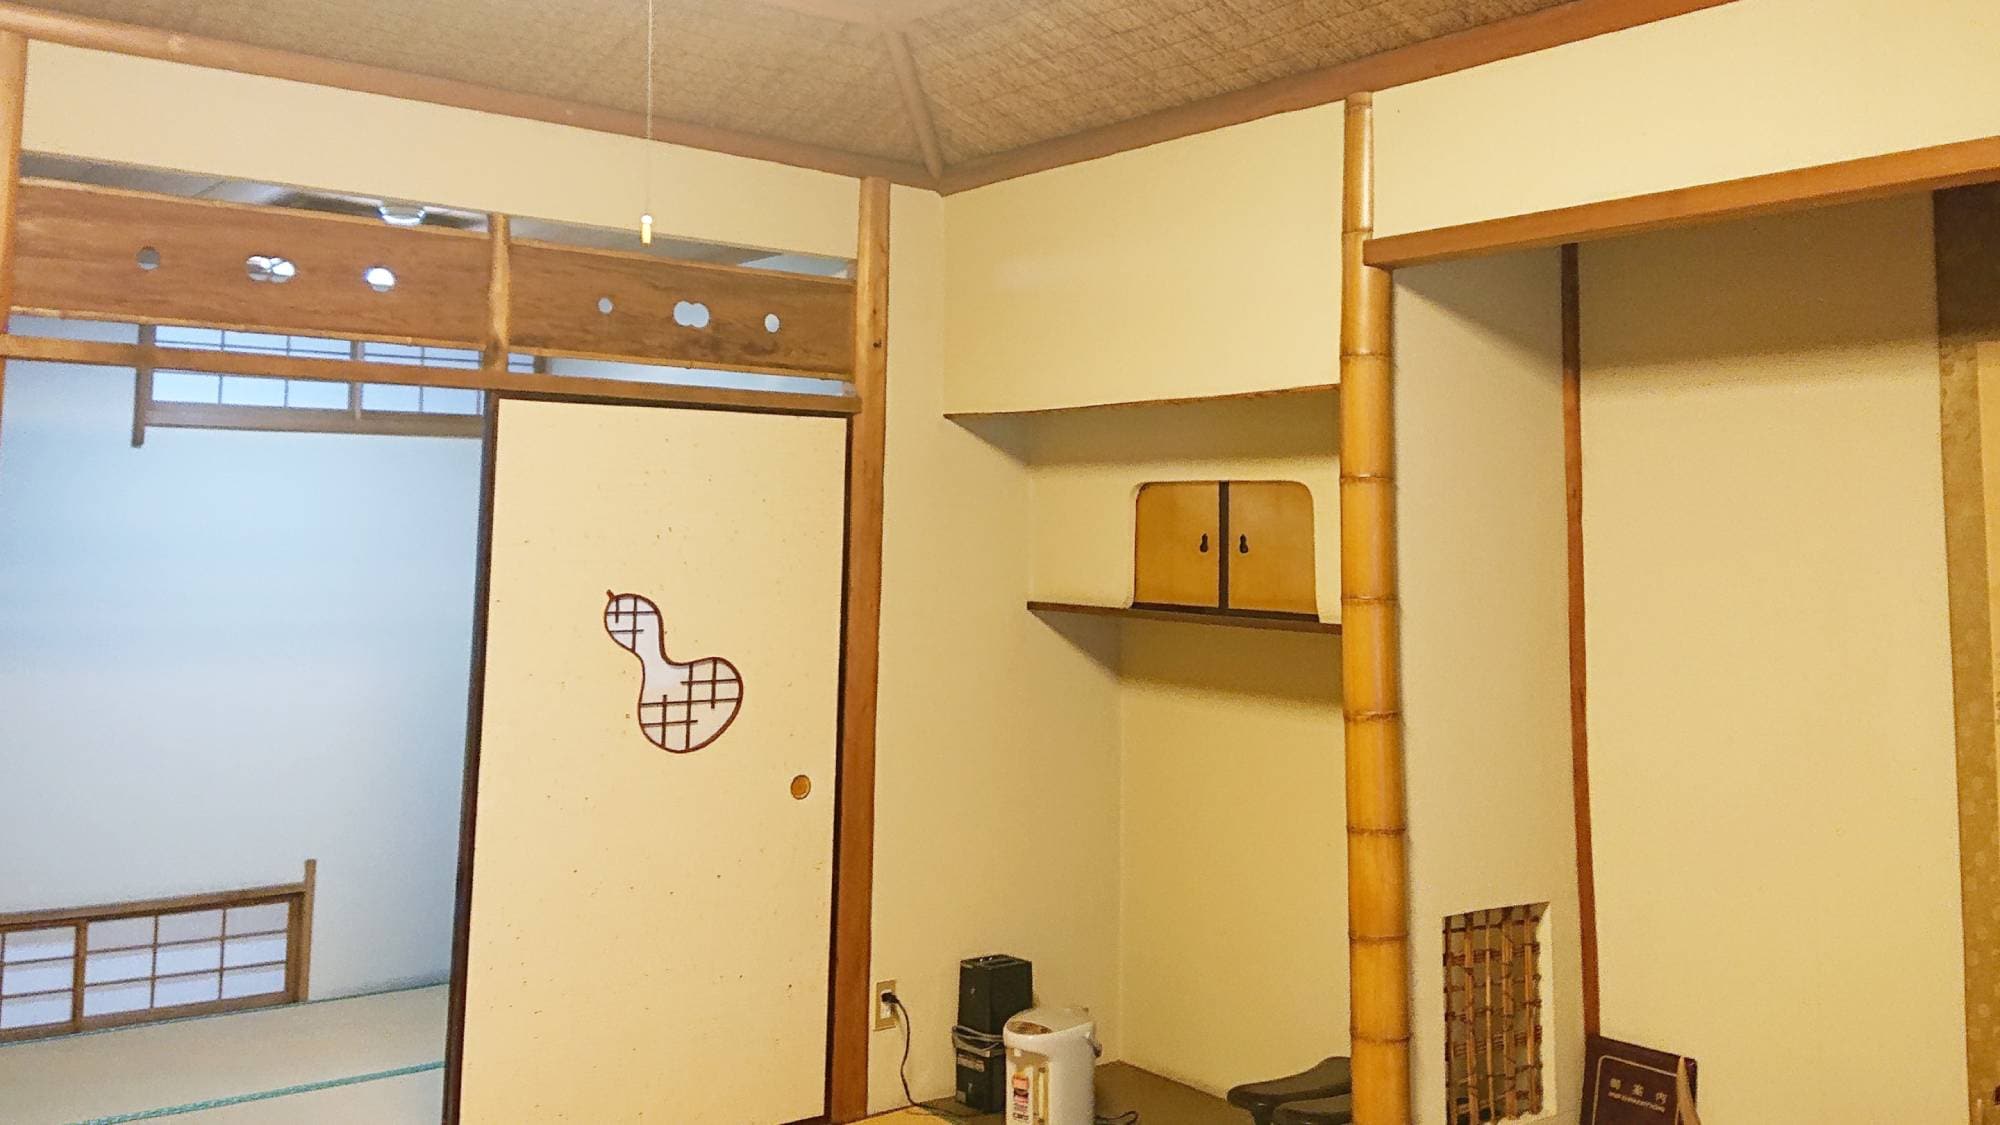 ・ ตัวอย่างห้องสไตล์ญี่ปุ่นที่มี 10 เสื่อทาทามิ (เพดาน)